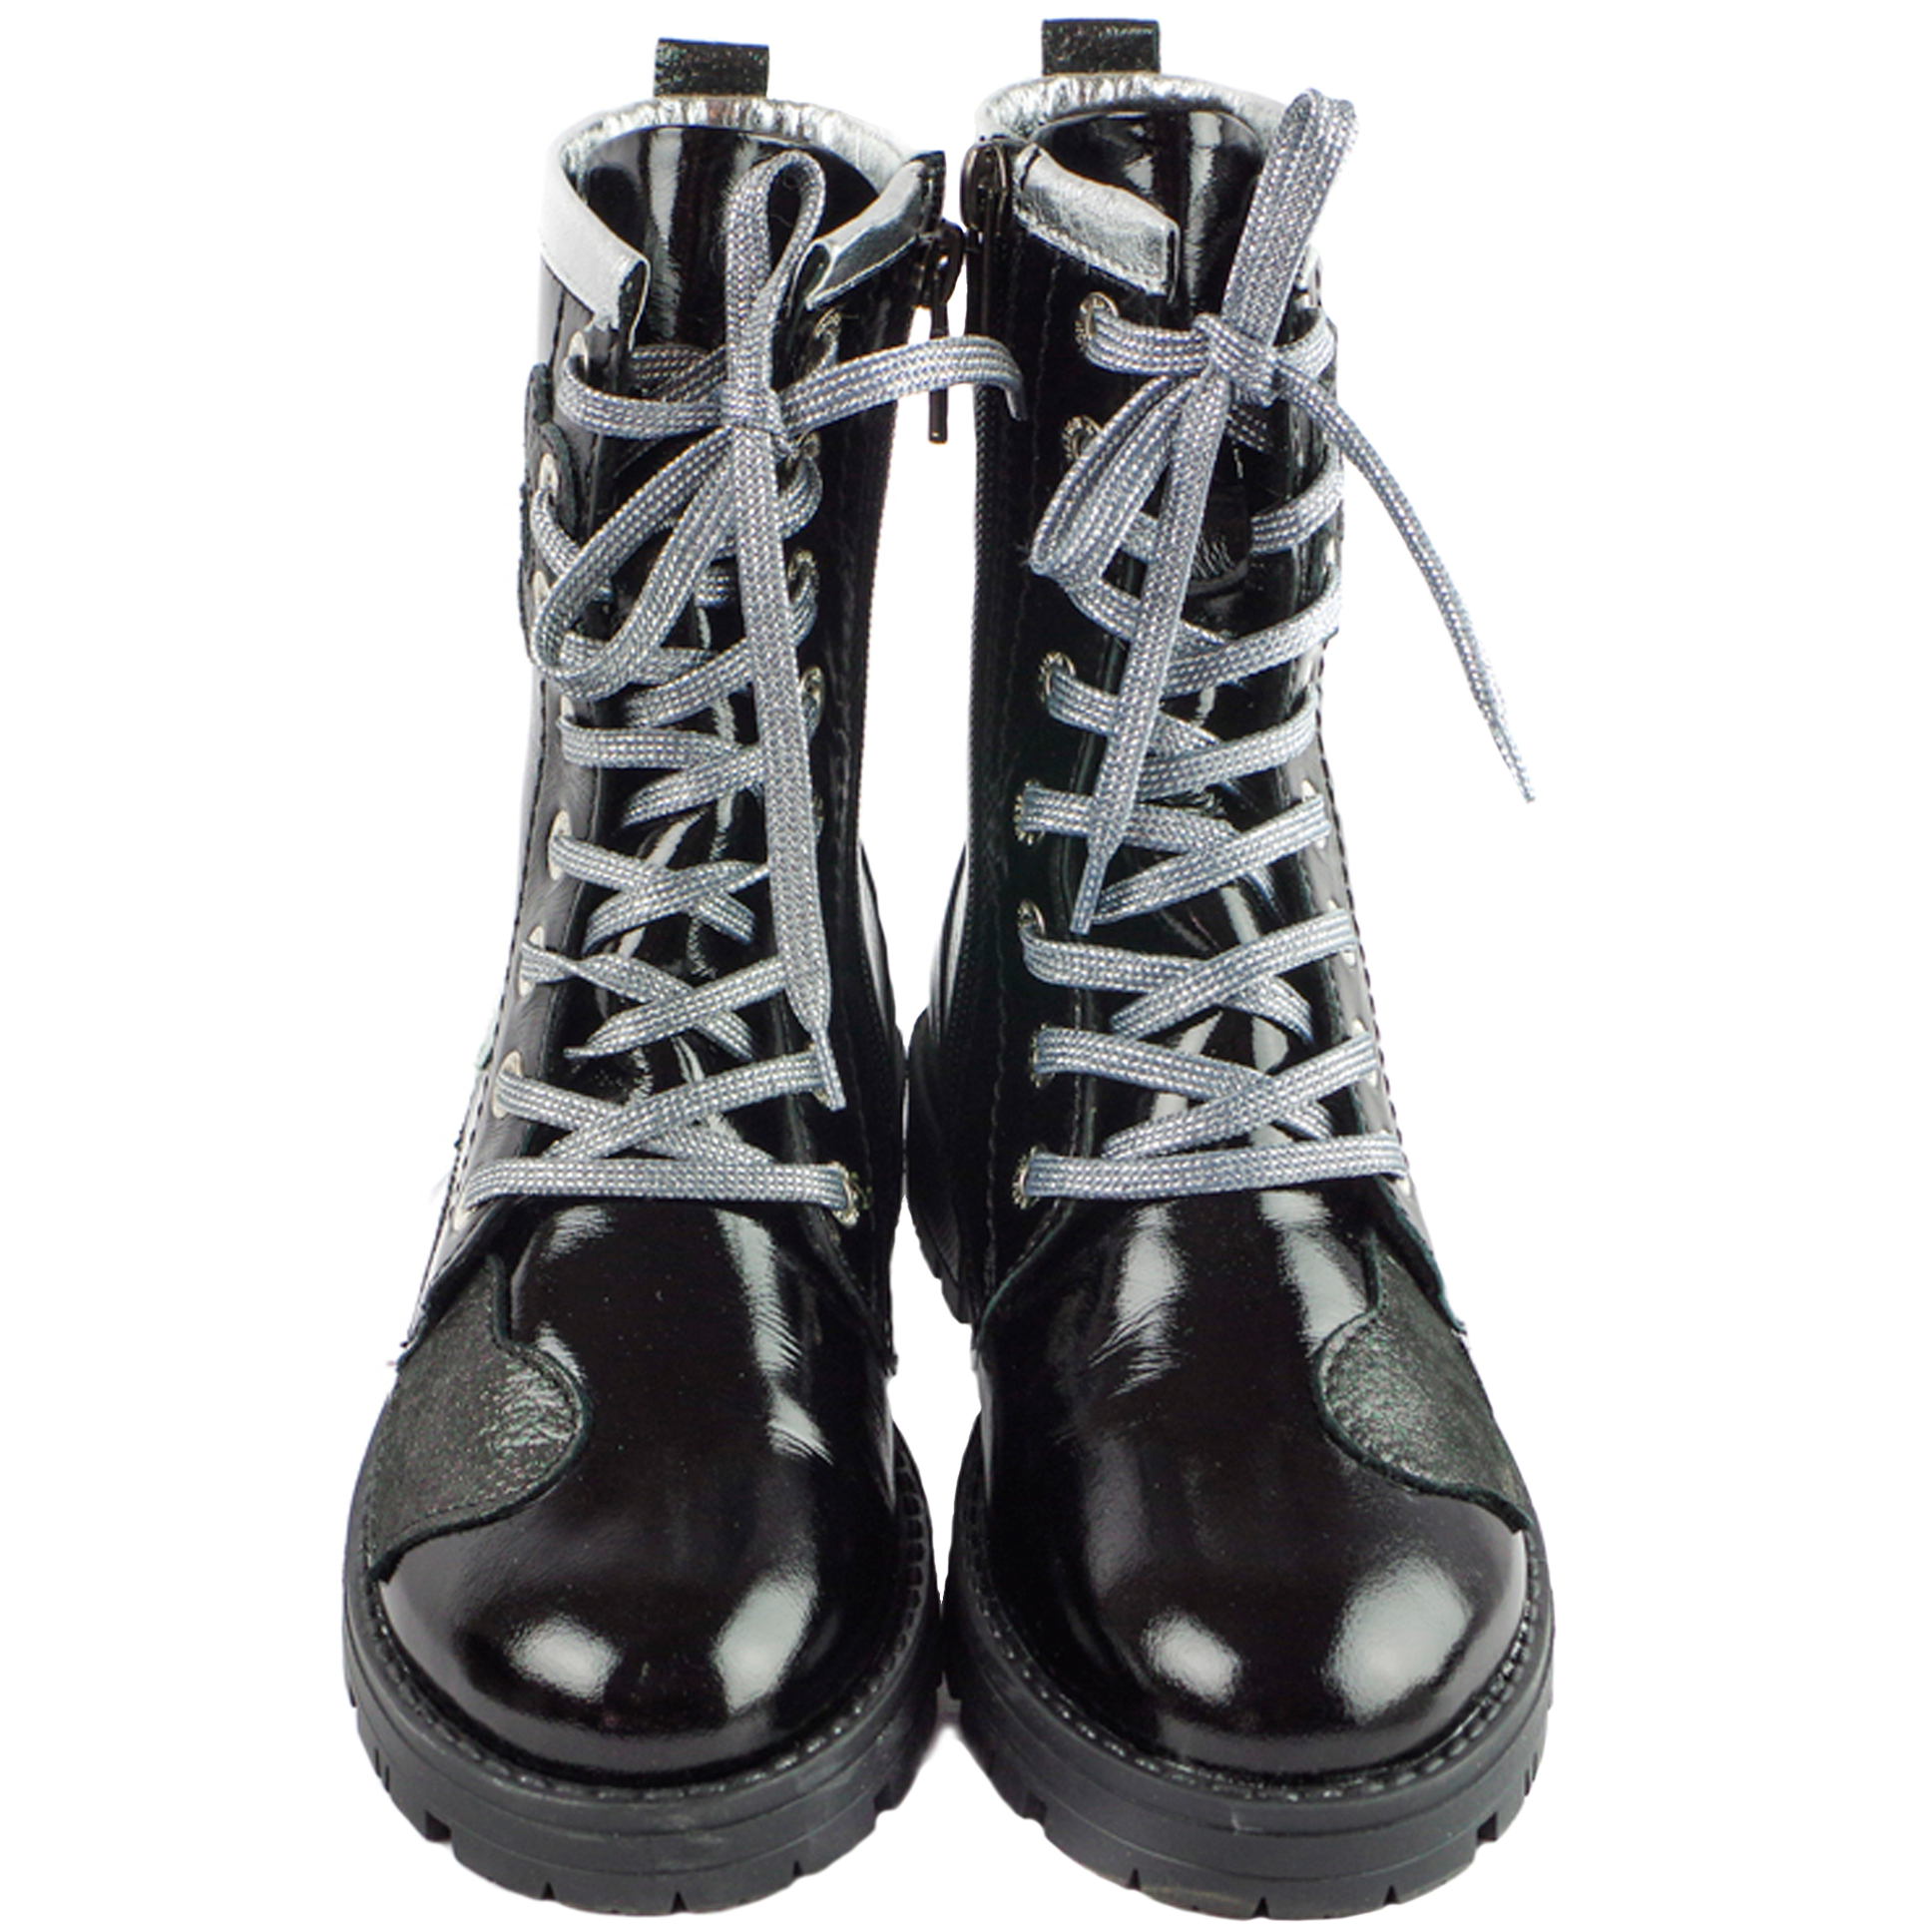 Демисезонные ботинки высокие (1719) материал Натуральная кожа, цвет Черный  для девочки 31-40 размеры – Sole Kids. Фото 3